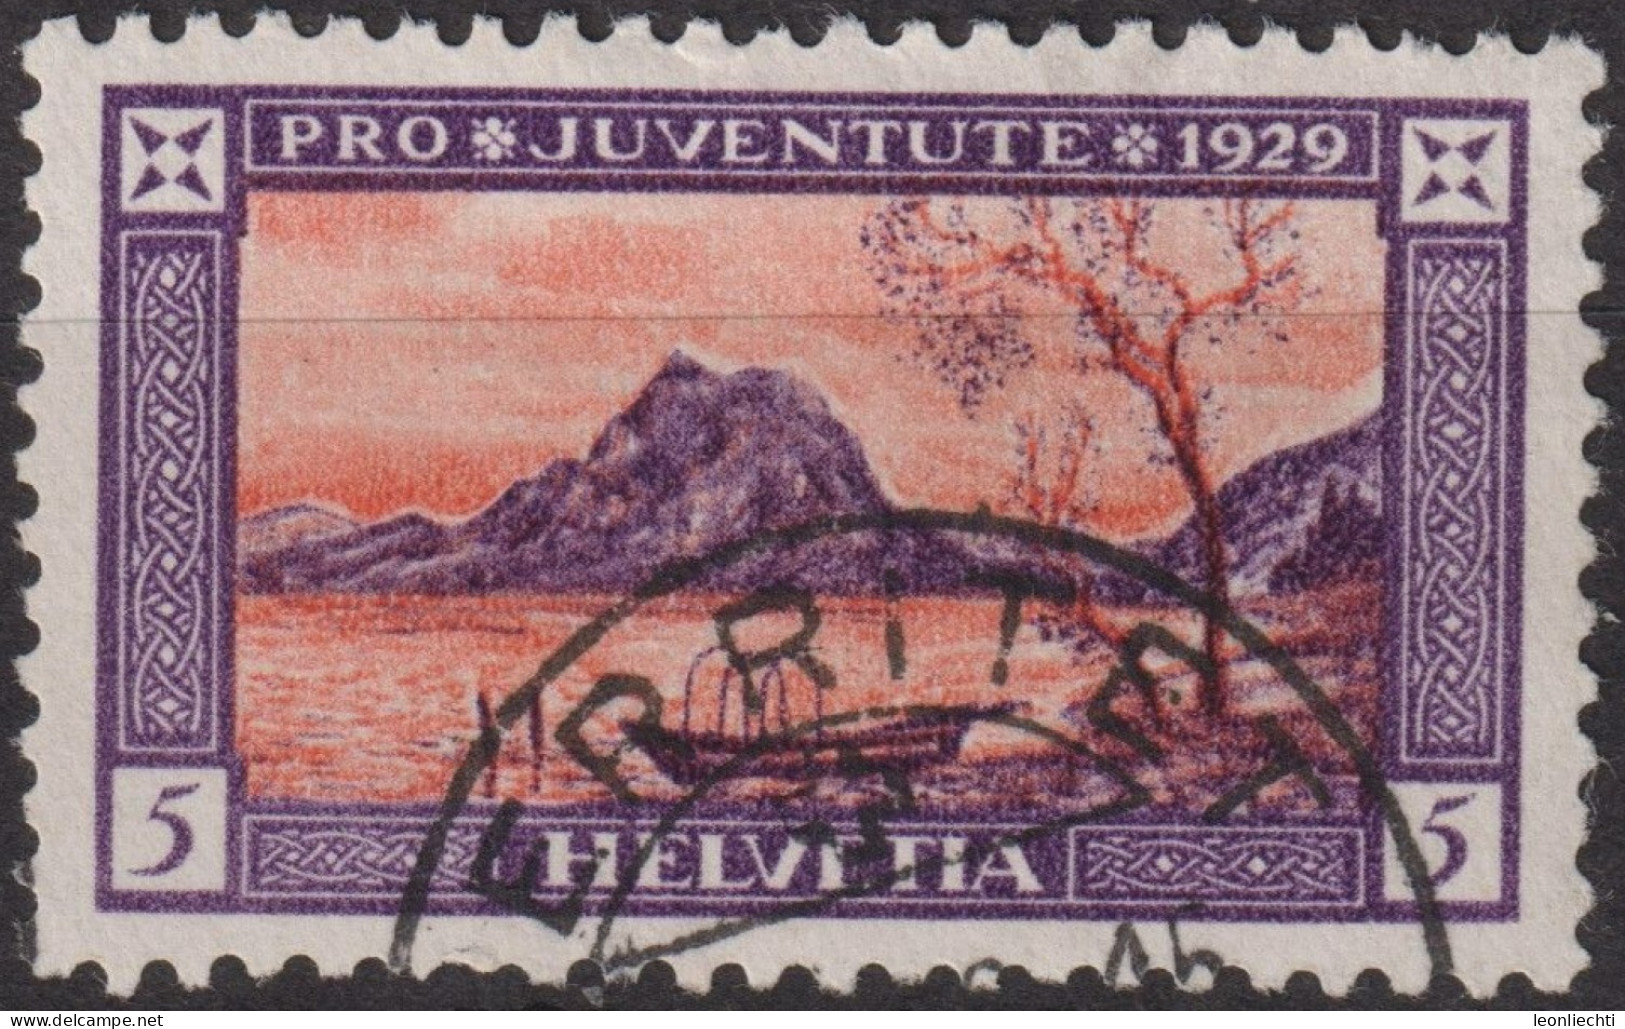 1929 Schweiz / Pro Juventute ° Zum:CH J49, Mi:CH 235, Yt:CH 235, Luganersee - Used Stamps